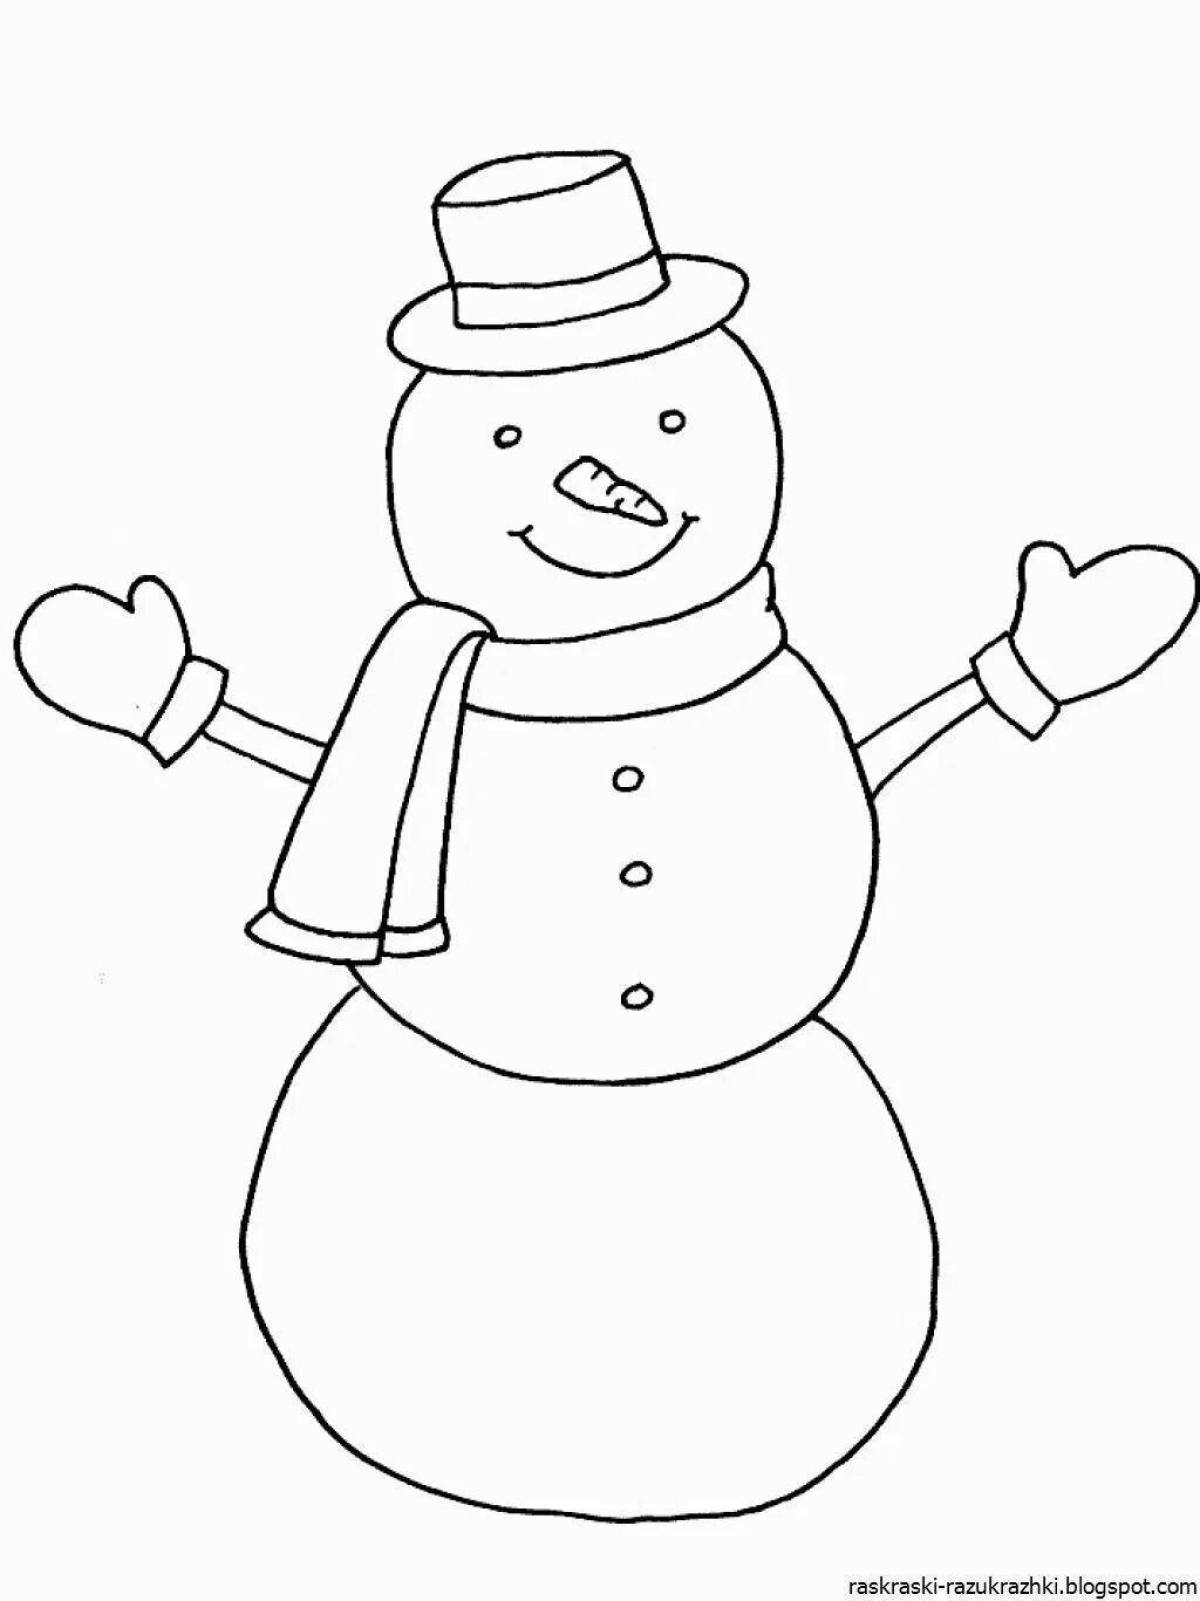 Озорная раскраска смешной снеговик для детей